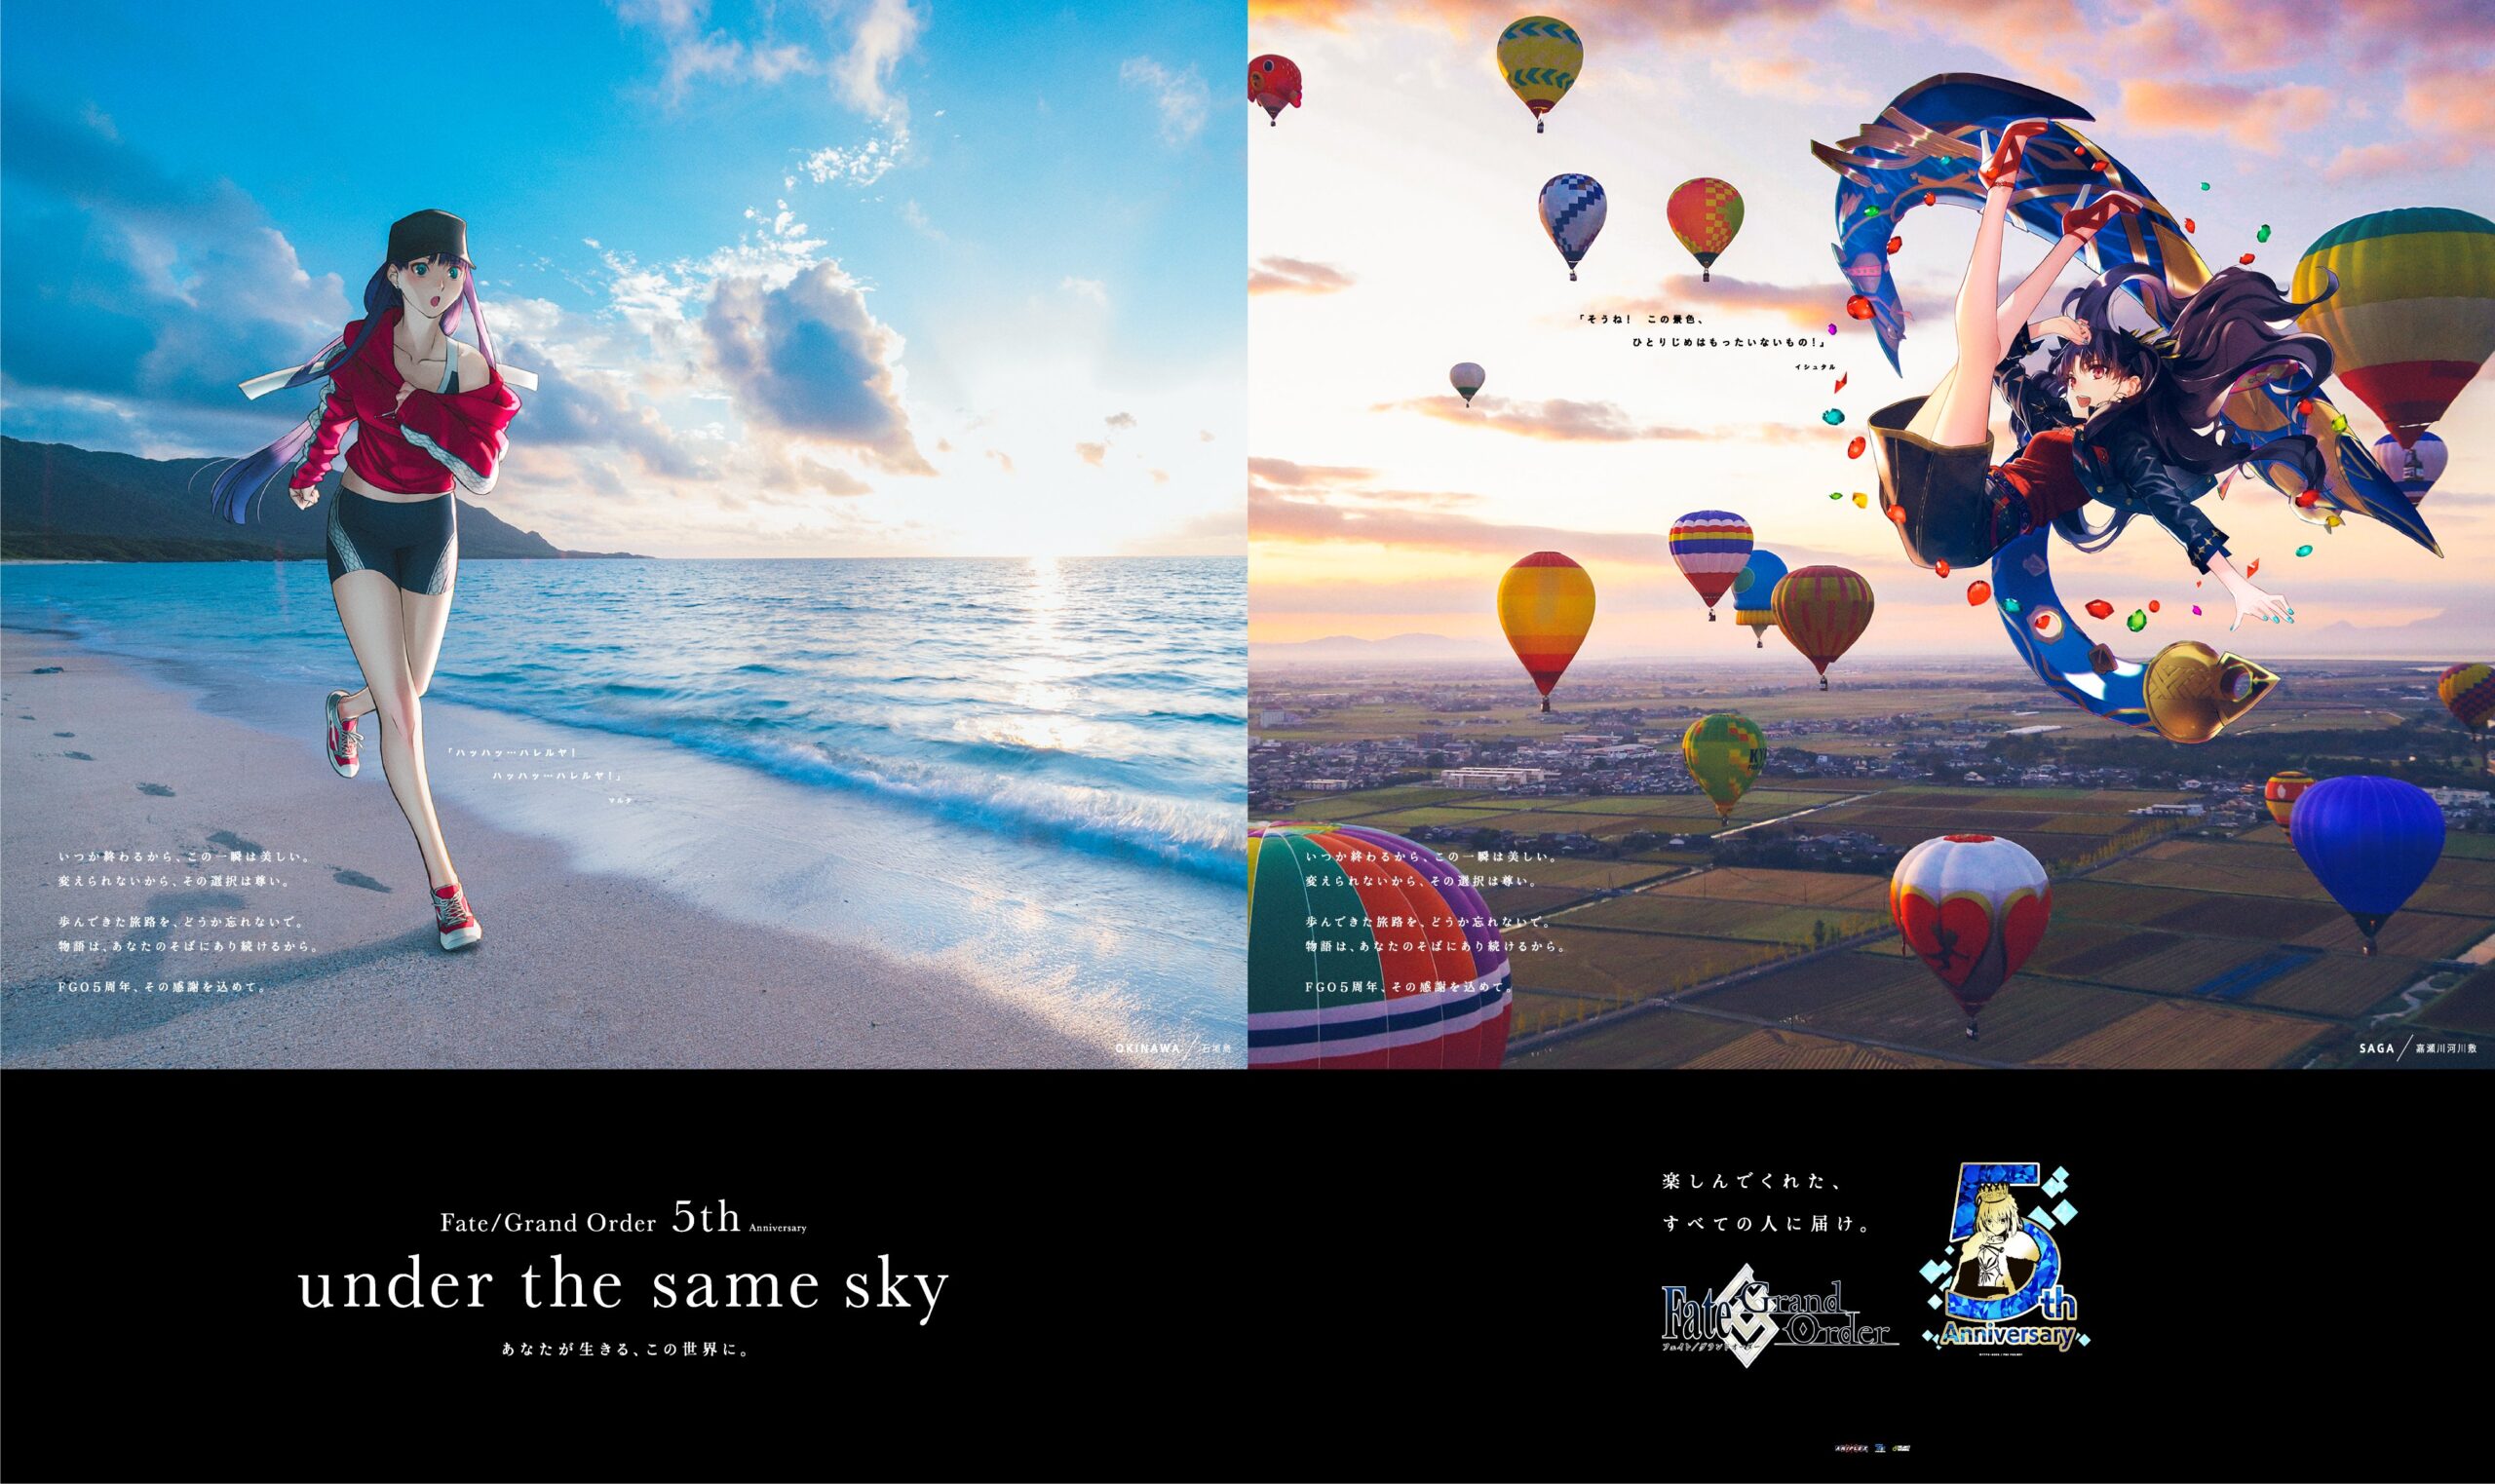 Fate Fgo5周年記念広告企画 Under The Same Sky より6月3日 水 から